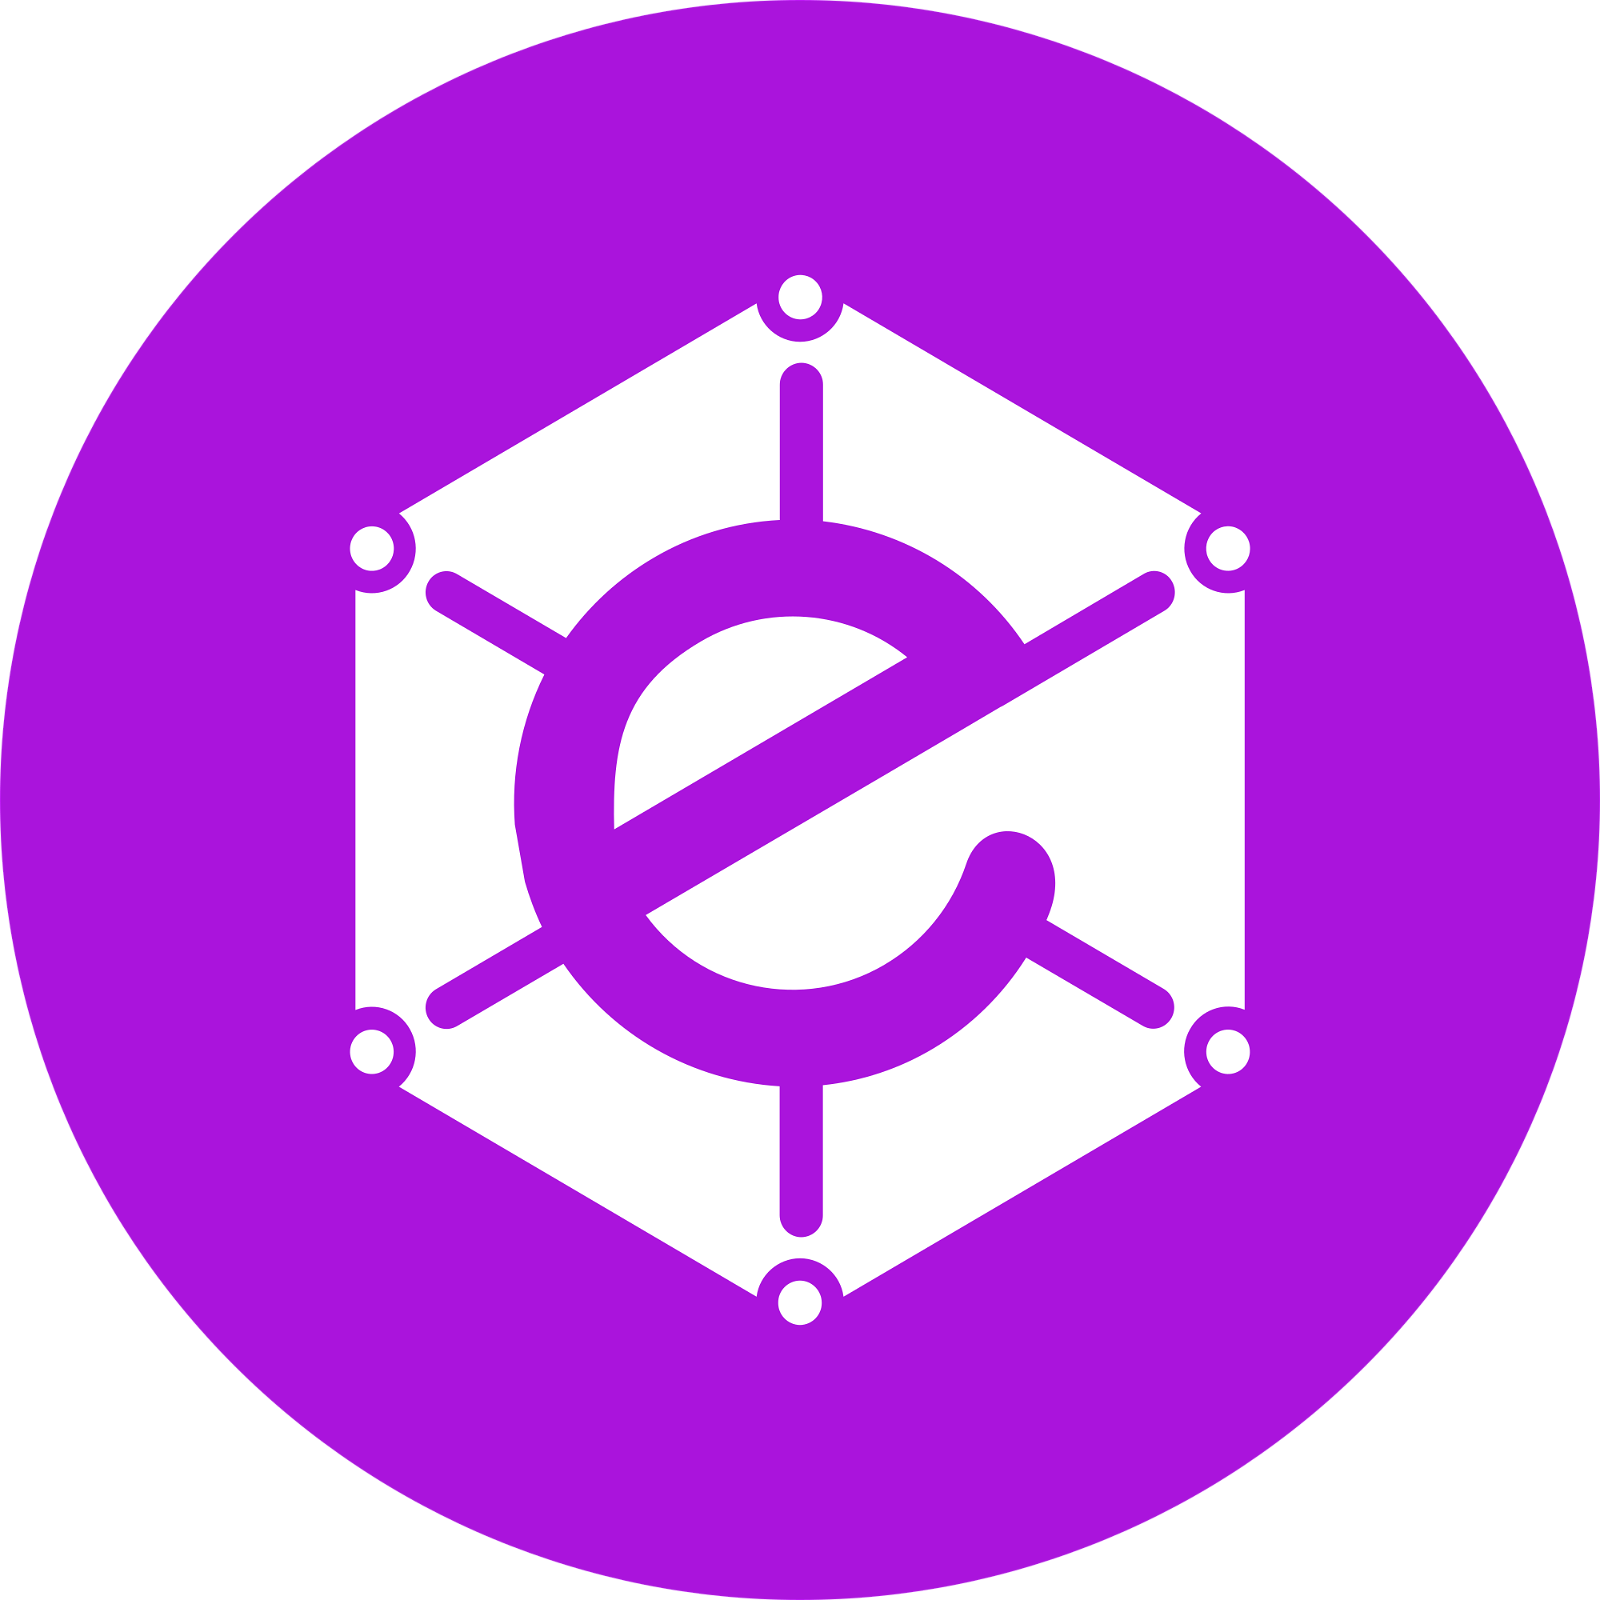 Electra Logo